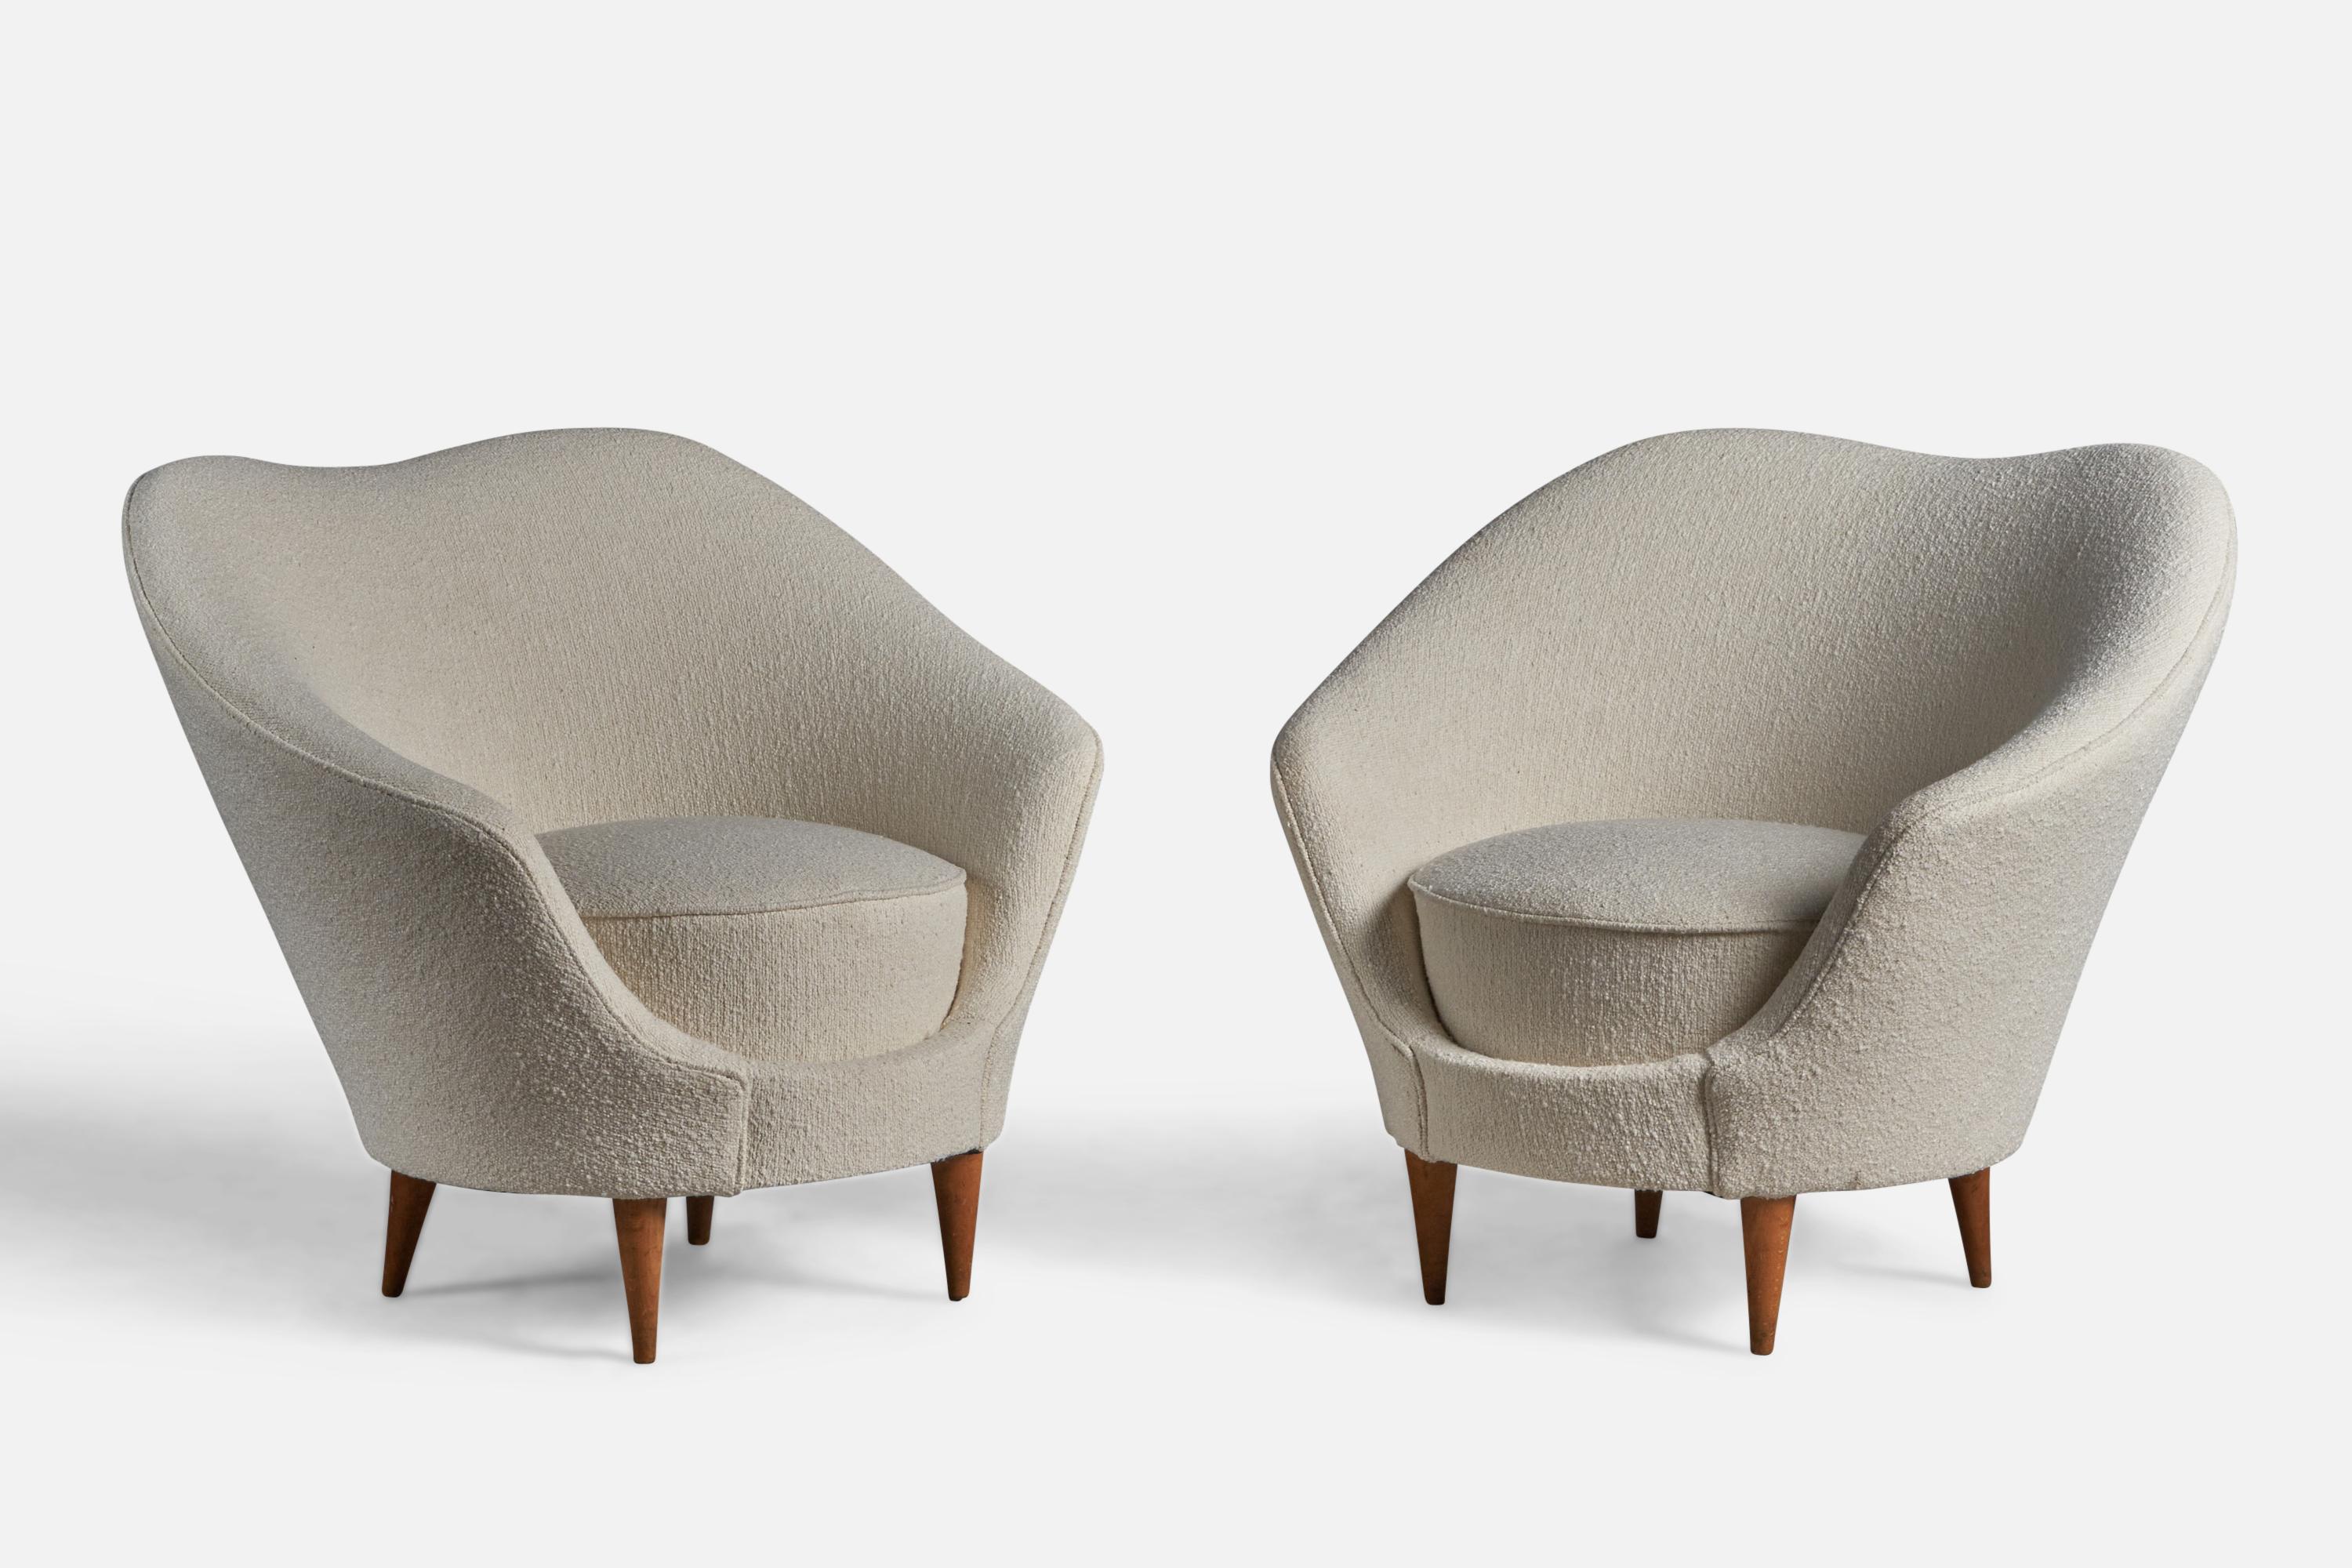 Paire de chaises de salon en noyer et tissu bouclé blanc, conçues par Federico Munari et produites par ISA Bergamo, Italie, années 1950.

Hauteur d'assise de 15,5 pouces